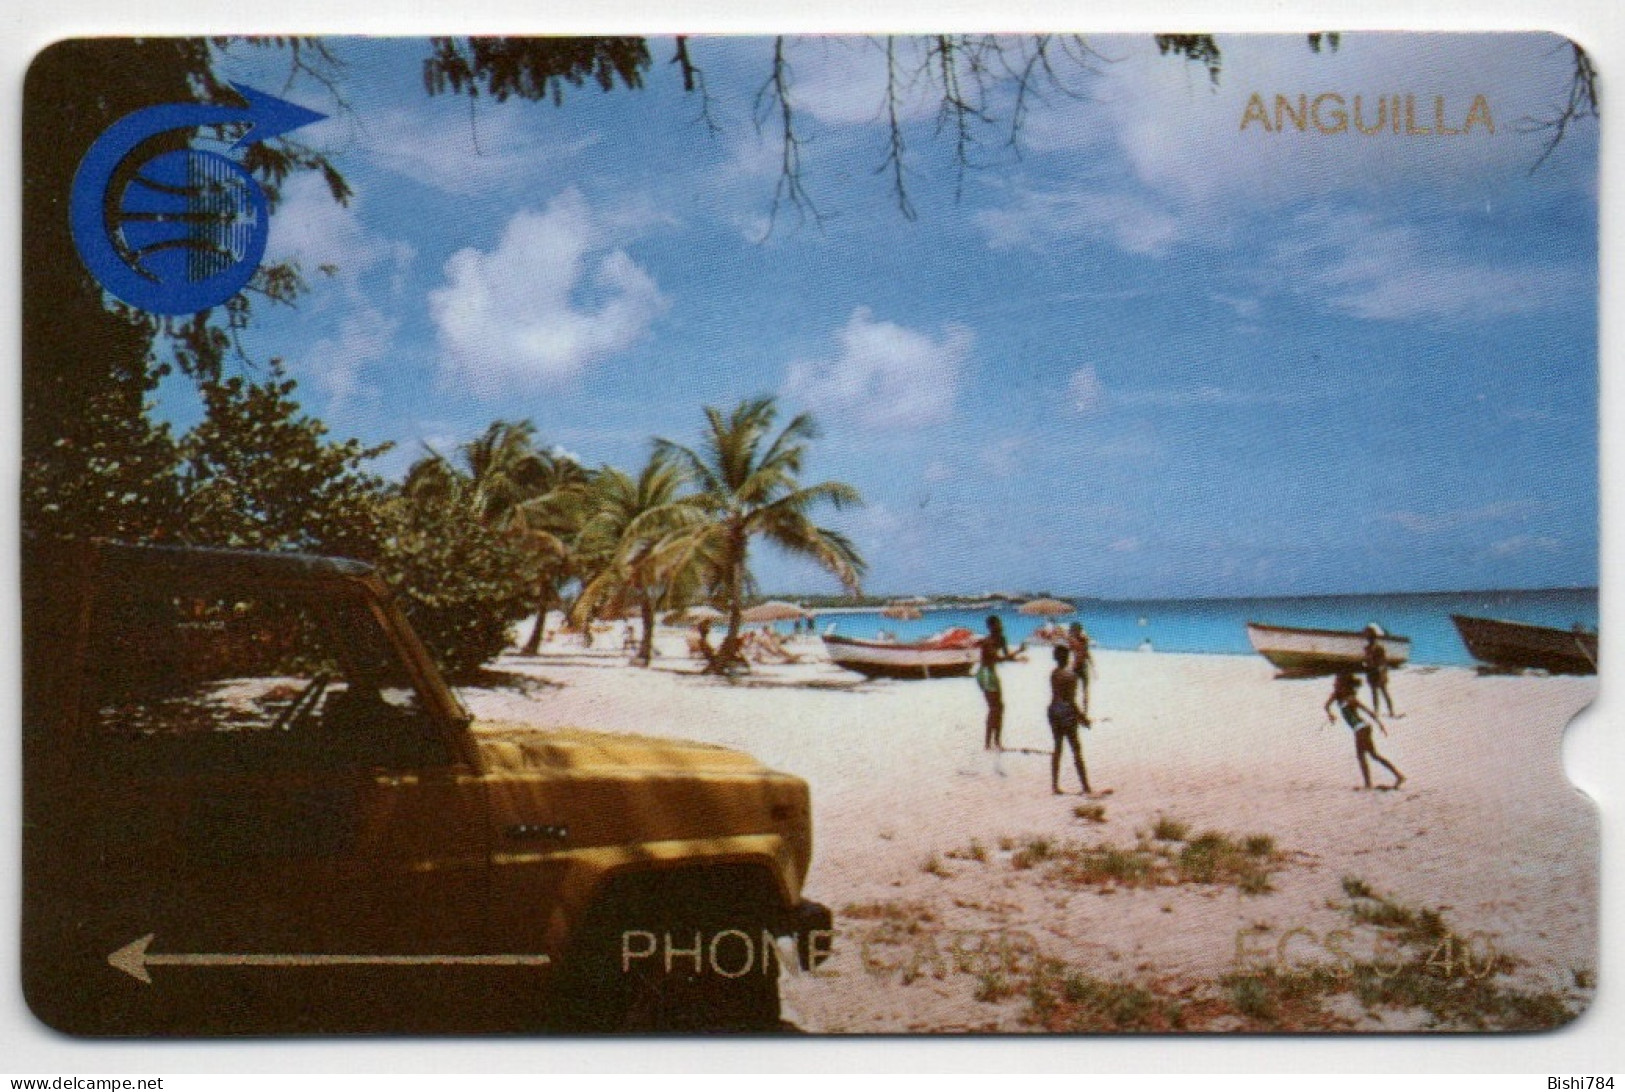 Anguilla - MEADS BAY $5.40 - ANG-1A (Leeward Islands Pack) - Anguila